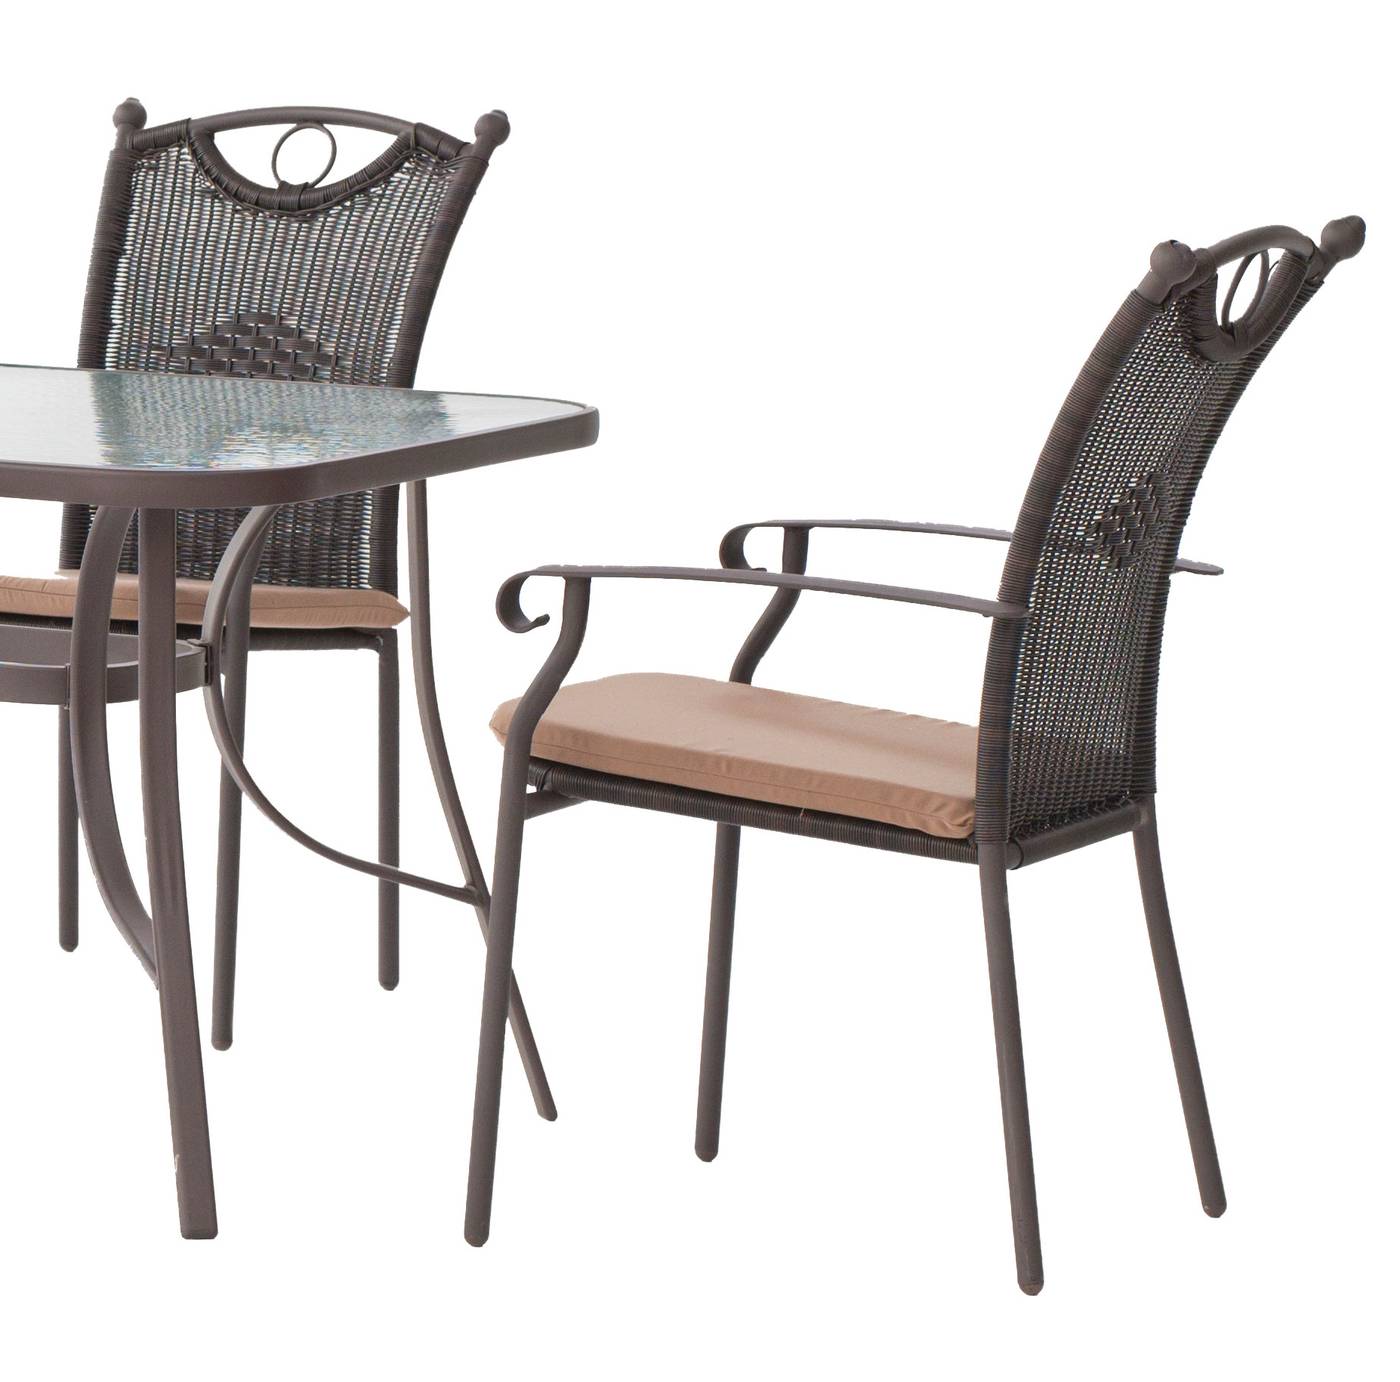 Set Acero Macao-Beldey 150-4 - Conjunto de acero color bronce: 1 mesa de acero con tablero de cristal templado + 4 sillones de forja y wicker